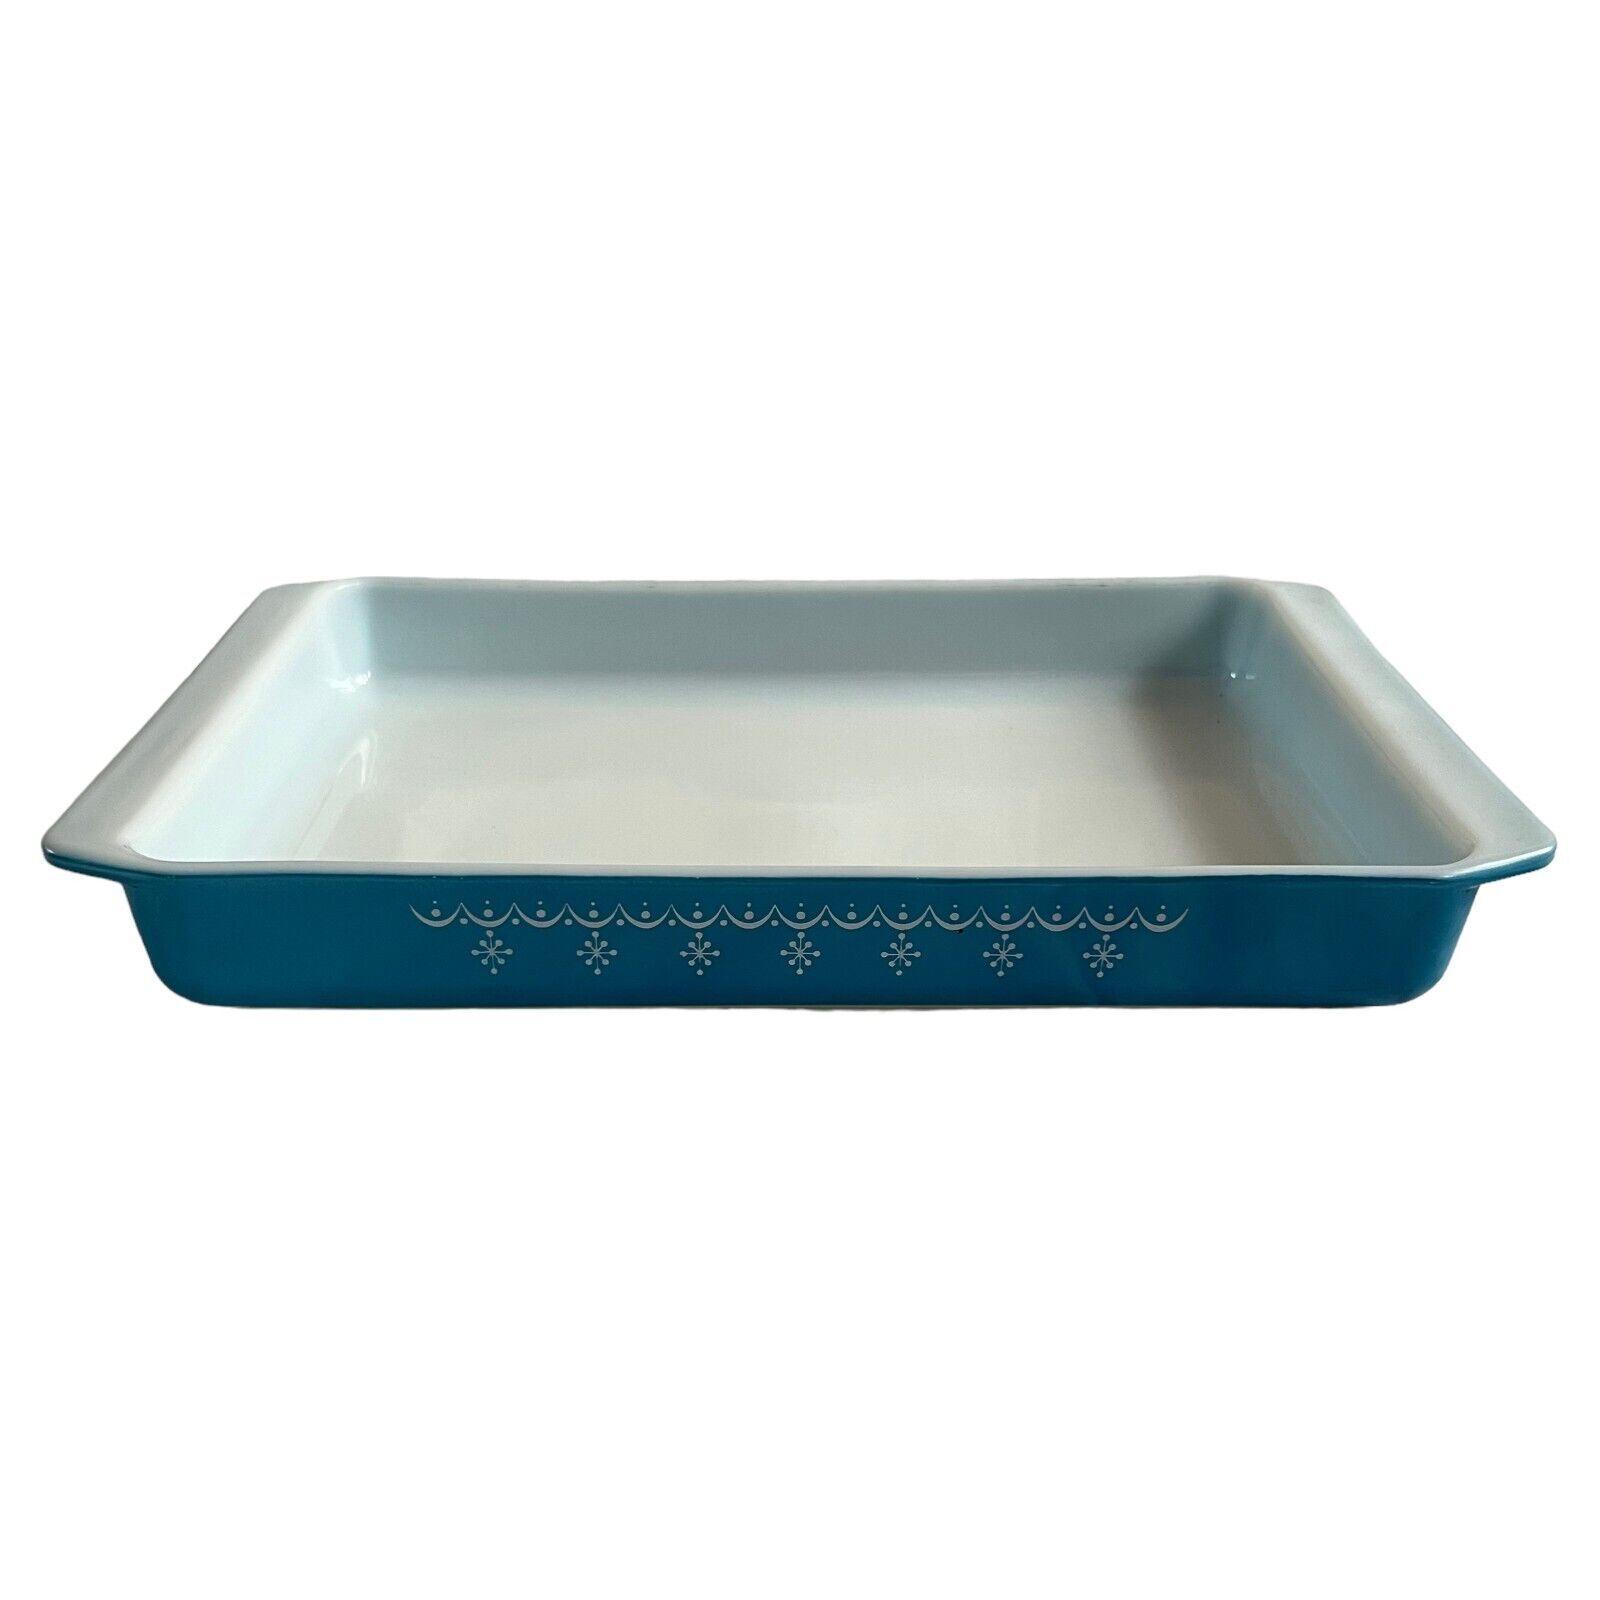 Vtg Pyrex casserole dish 933 snowflake blue garland large lasagna cake pan 70s